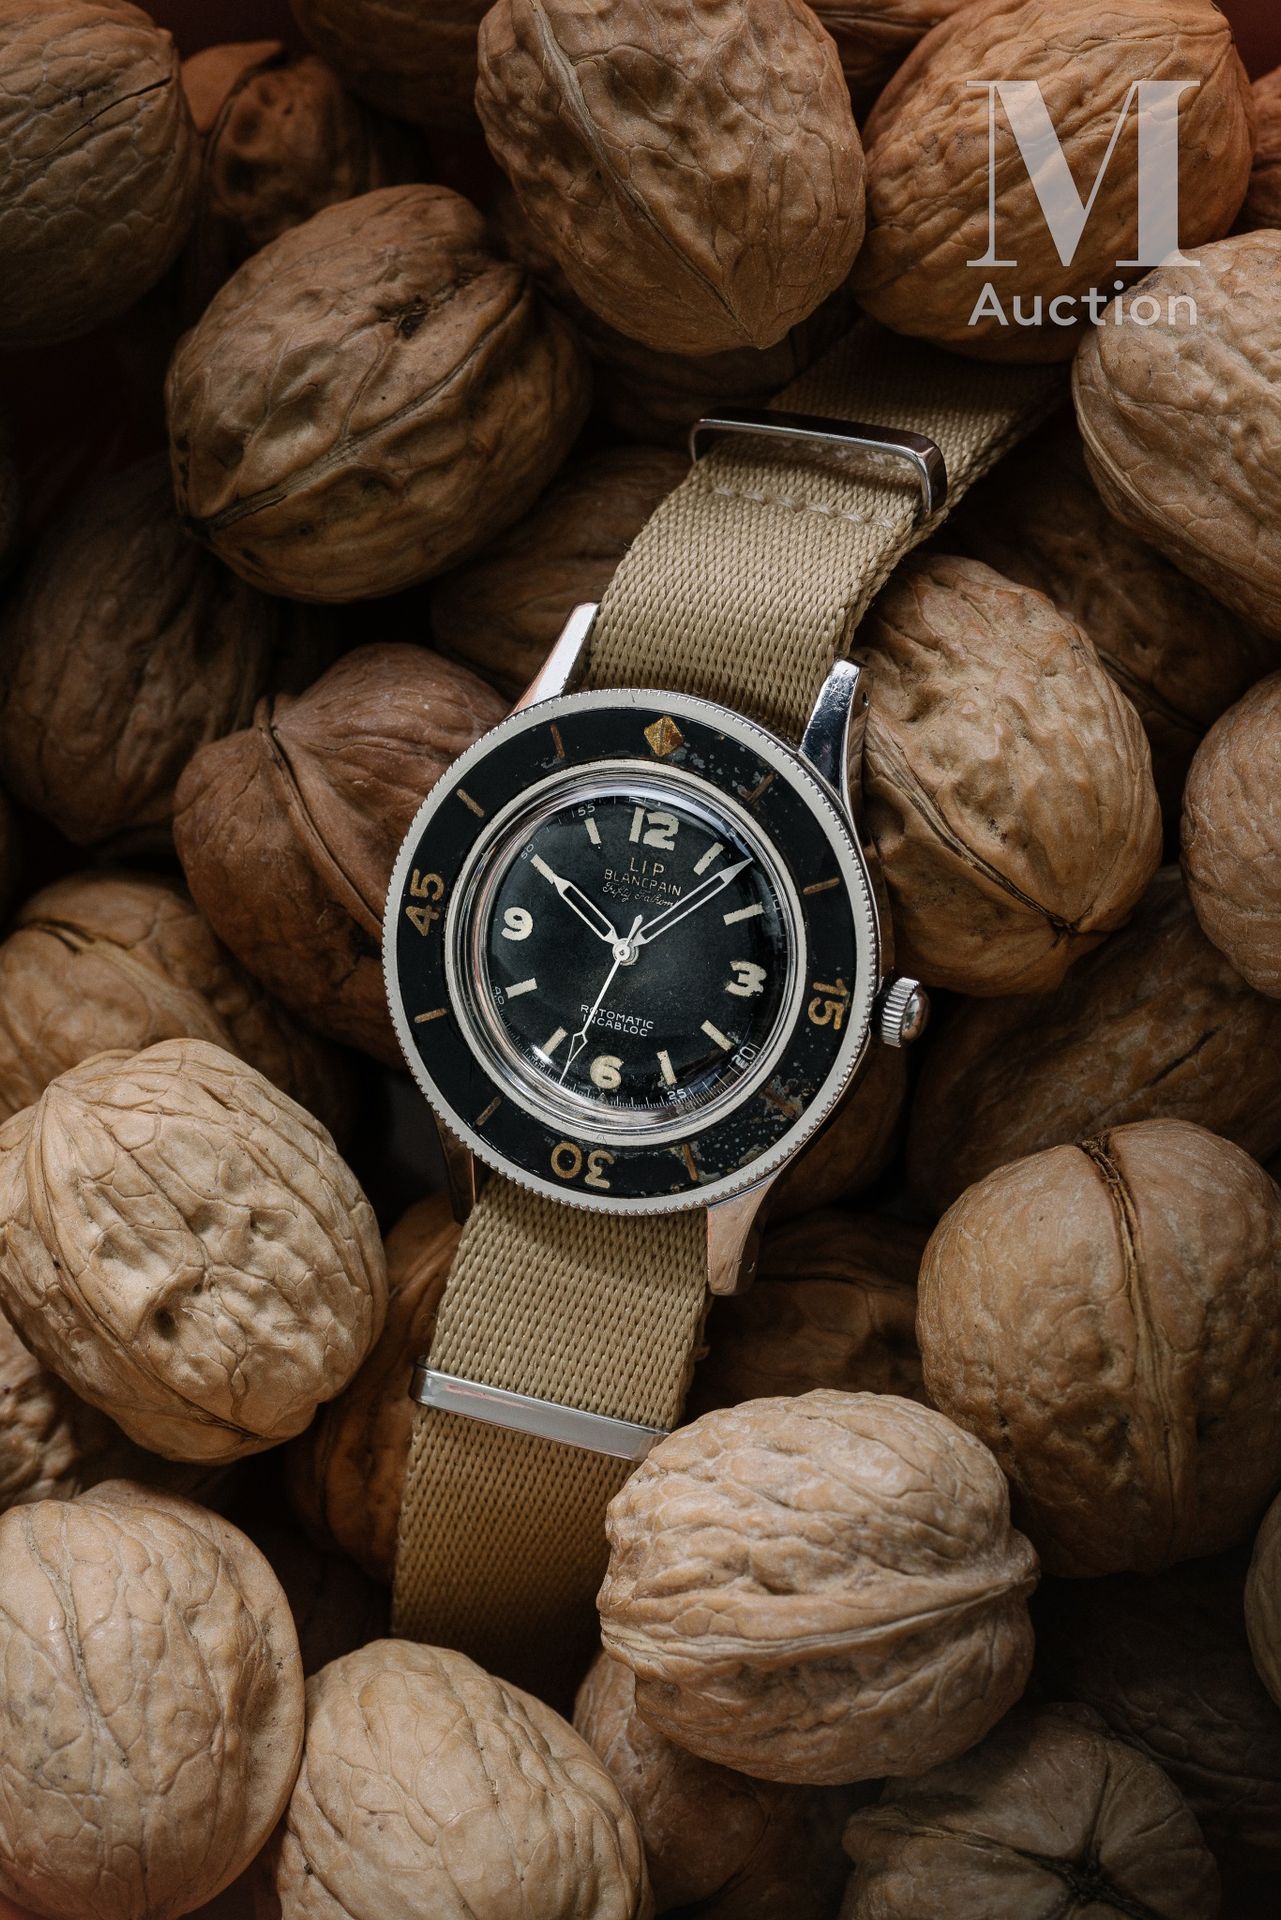 Blancpain/Lip Cincuenta brazas

Alrededor de 1953

Reloj de buceo para hombre

C&hellip;